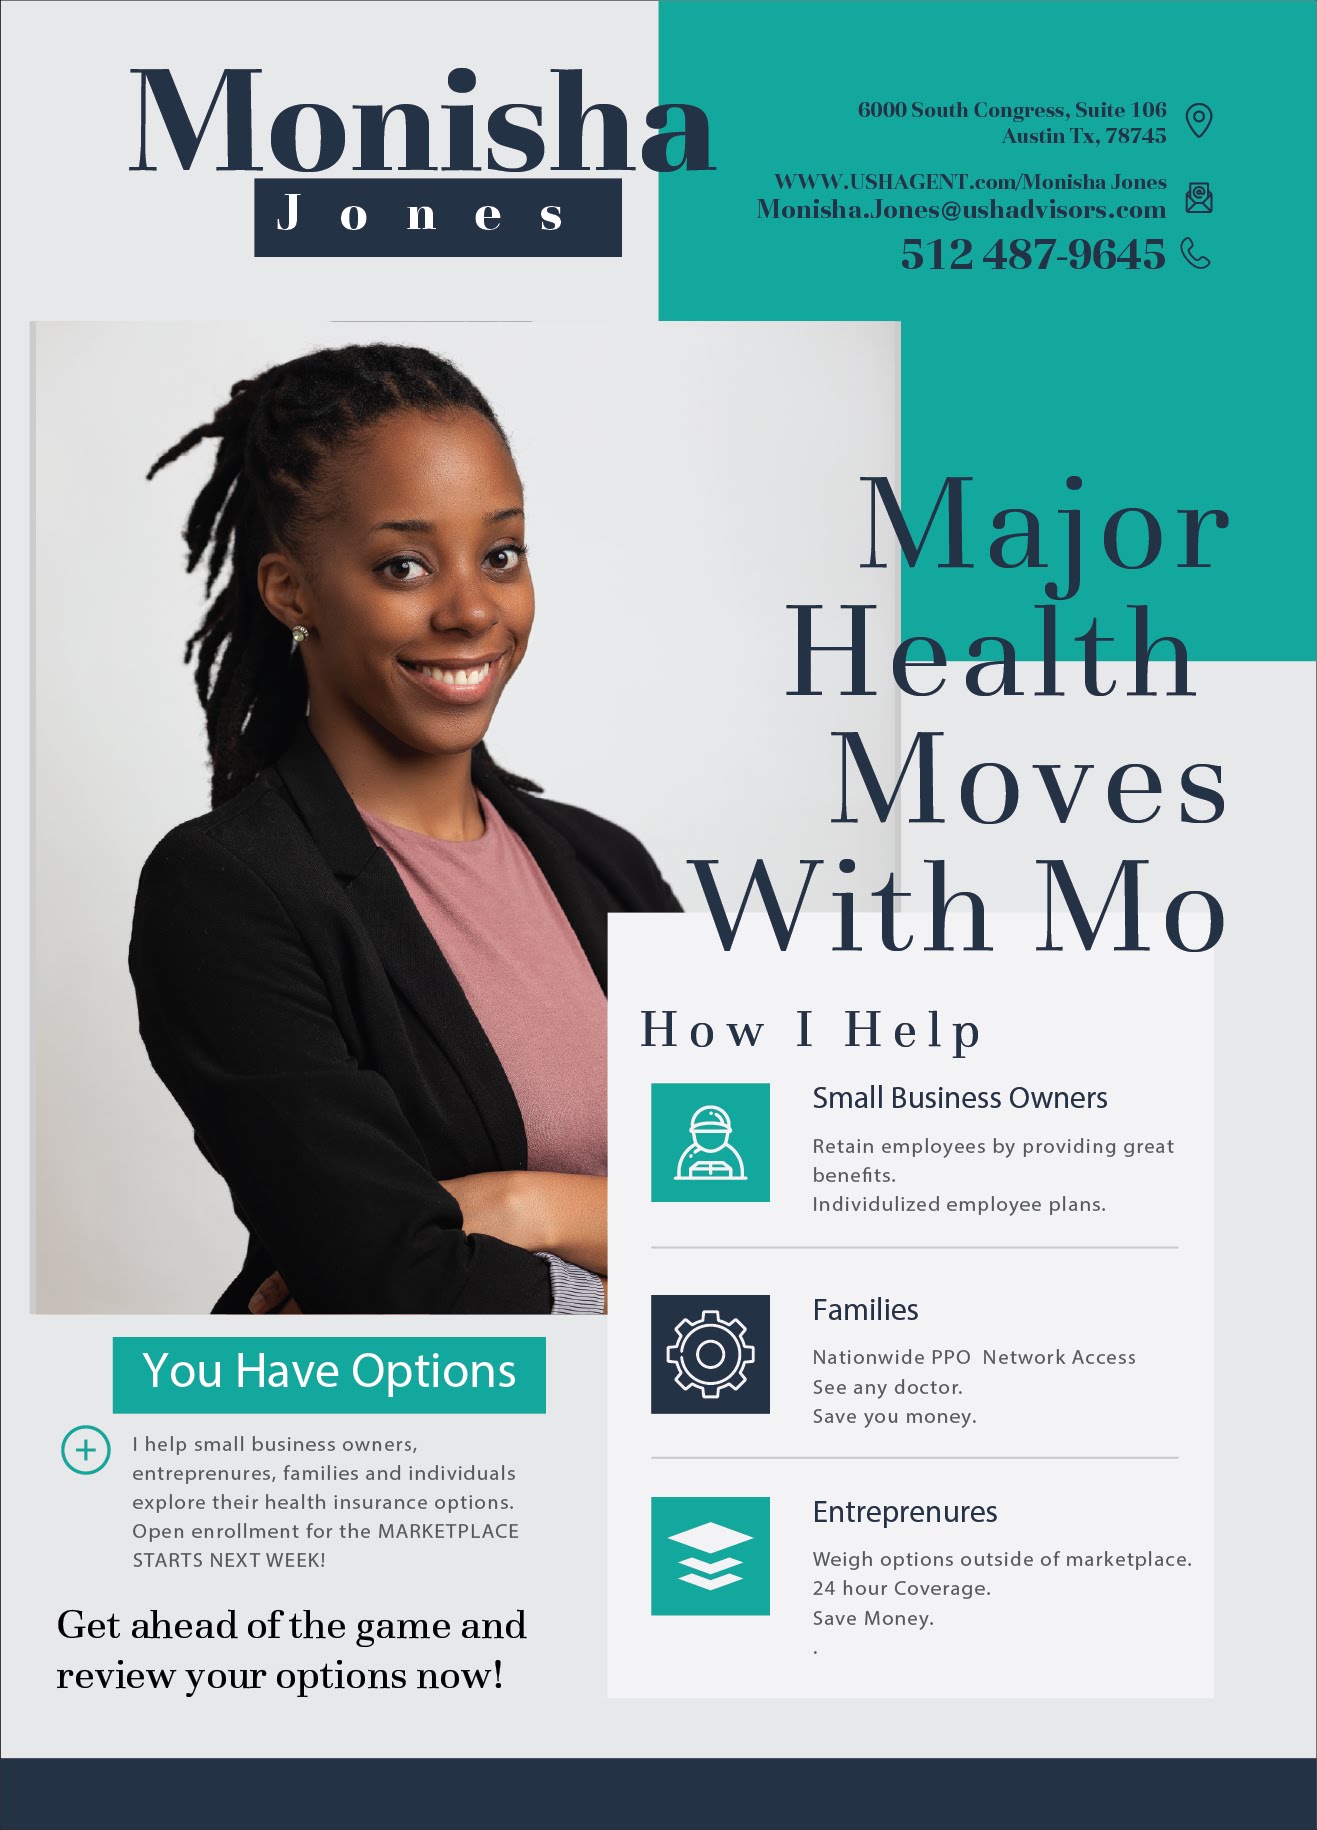 Monisha Jones health insurance flyer major moves with Mo